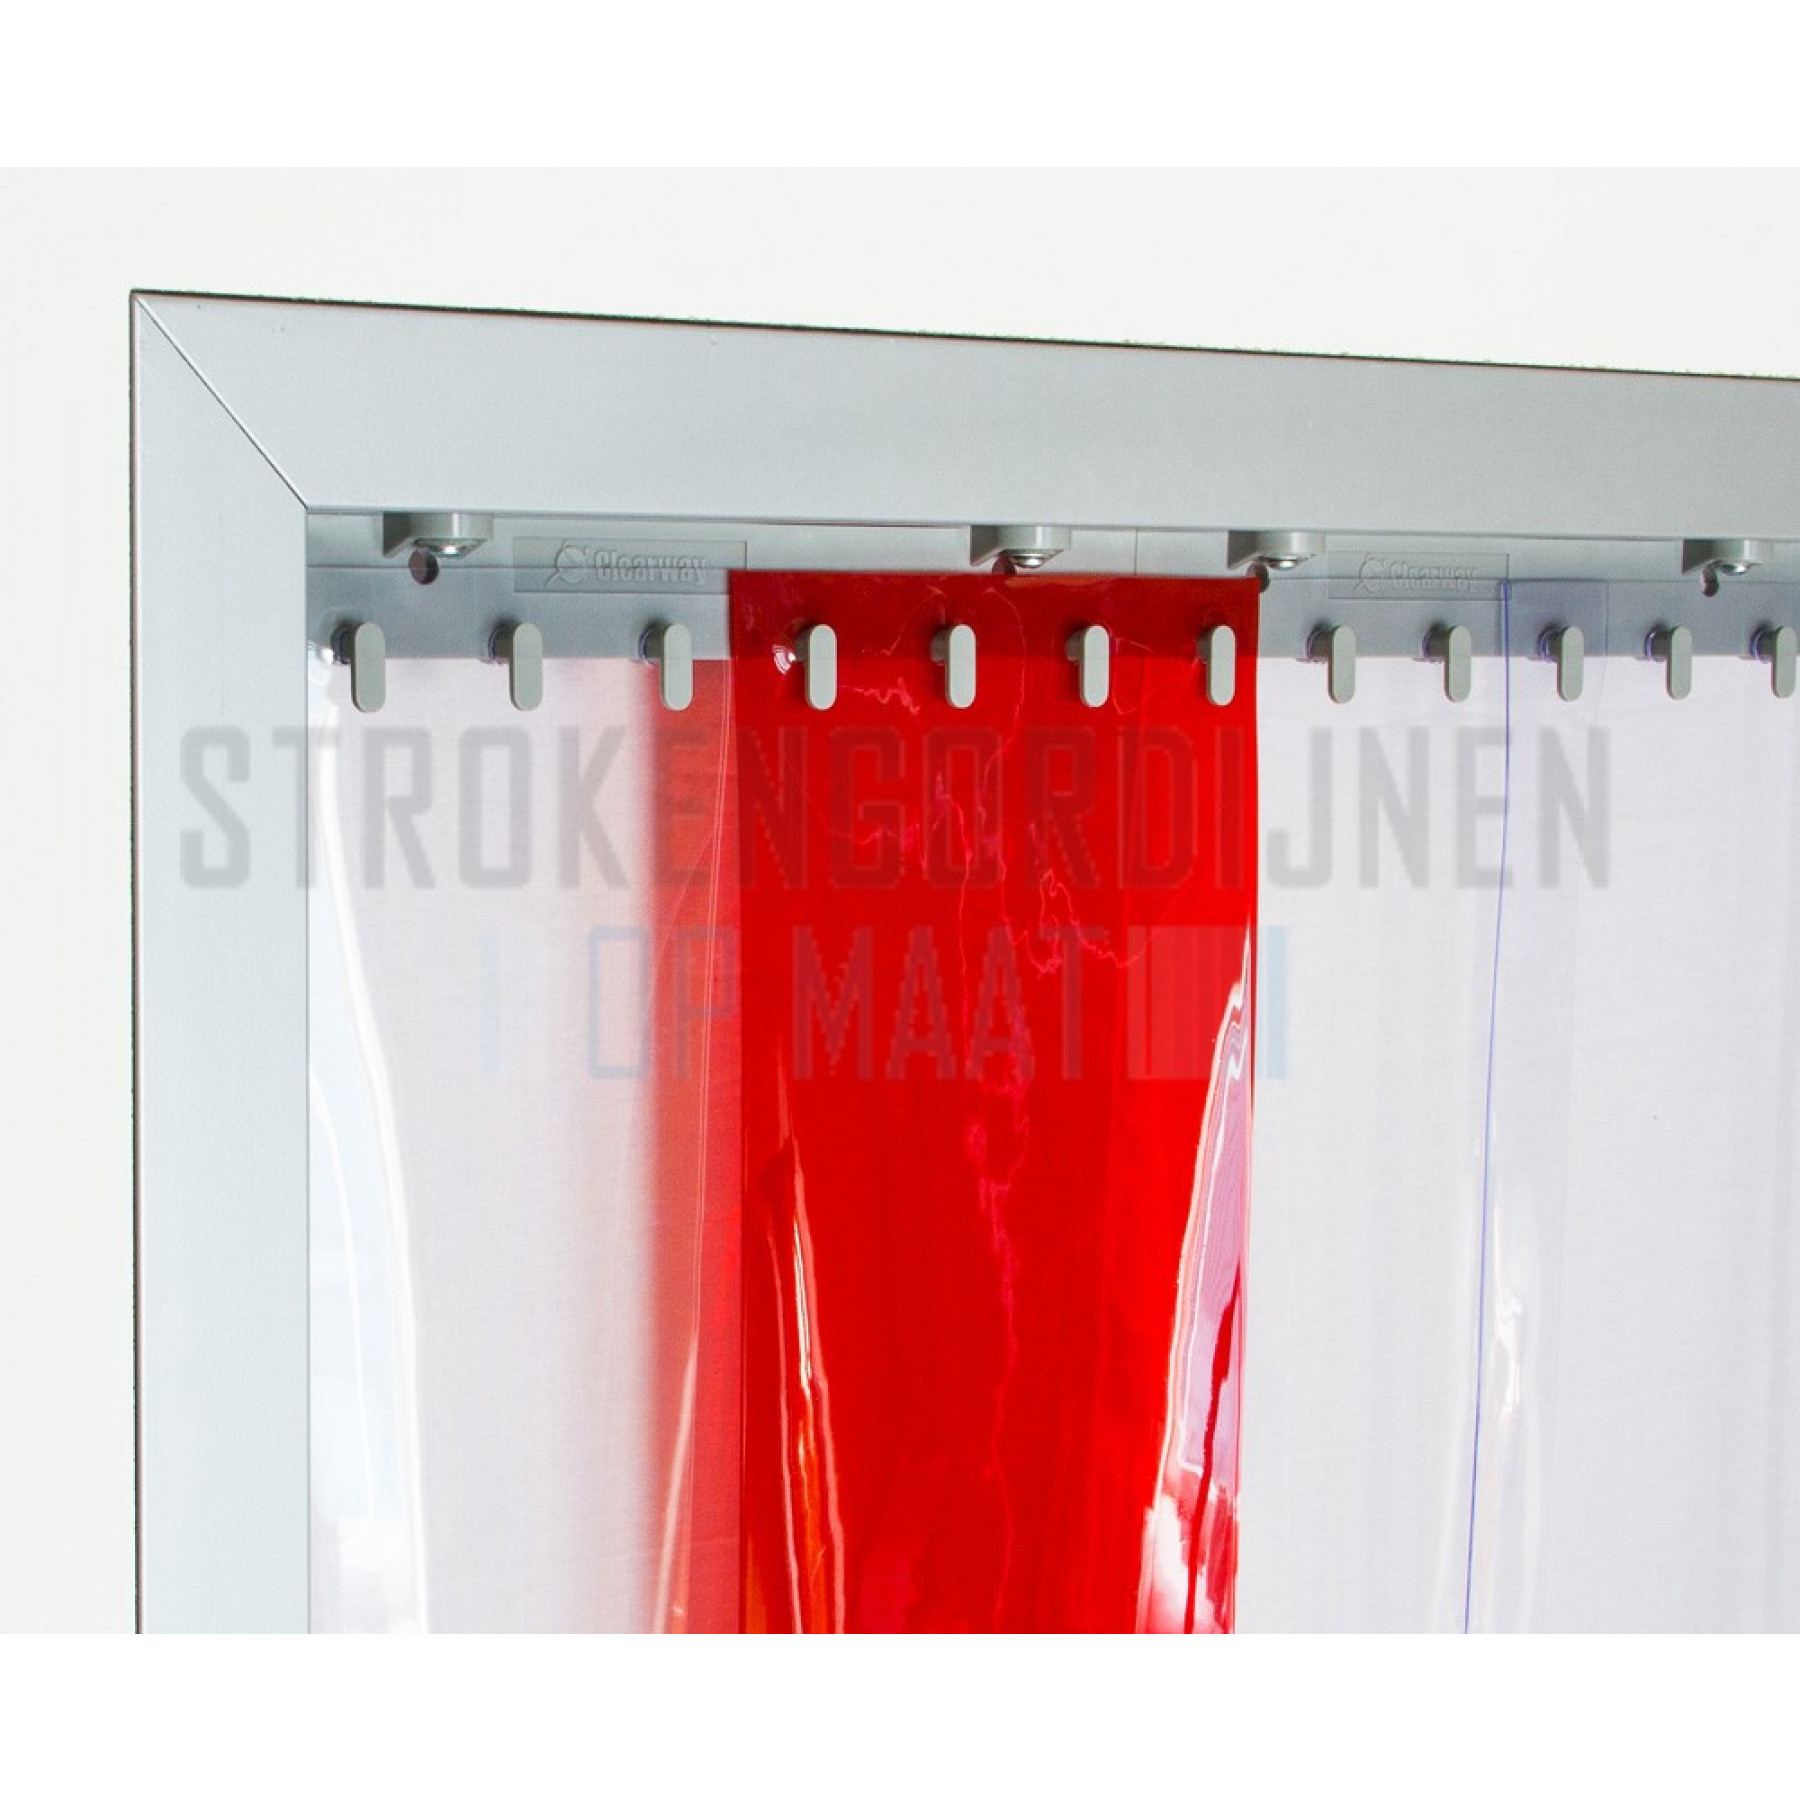 PVC op rol, 400mm breed, 4mm dik, 50 meter lengte, kleur rood, transparant